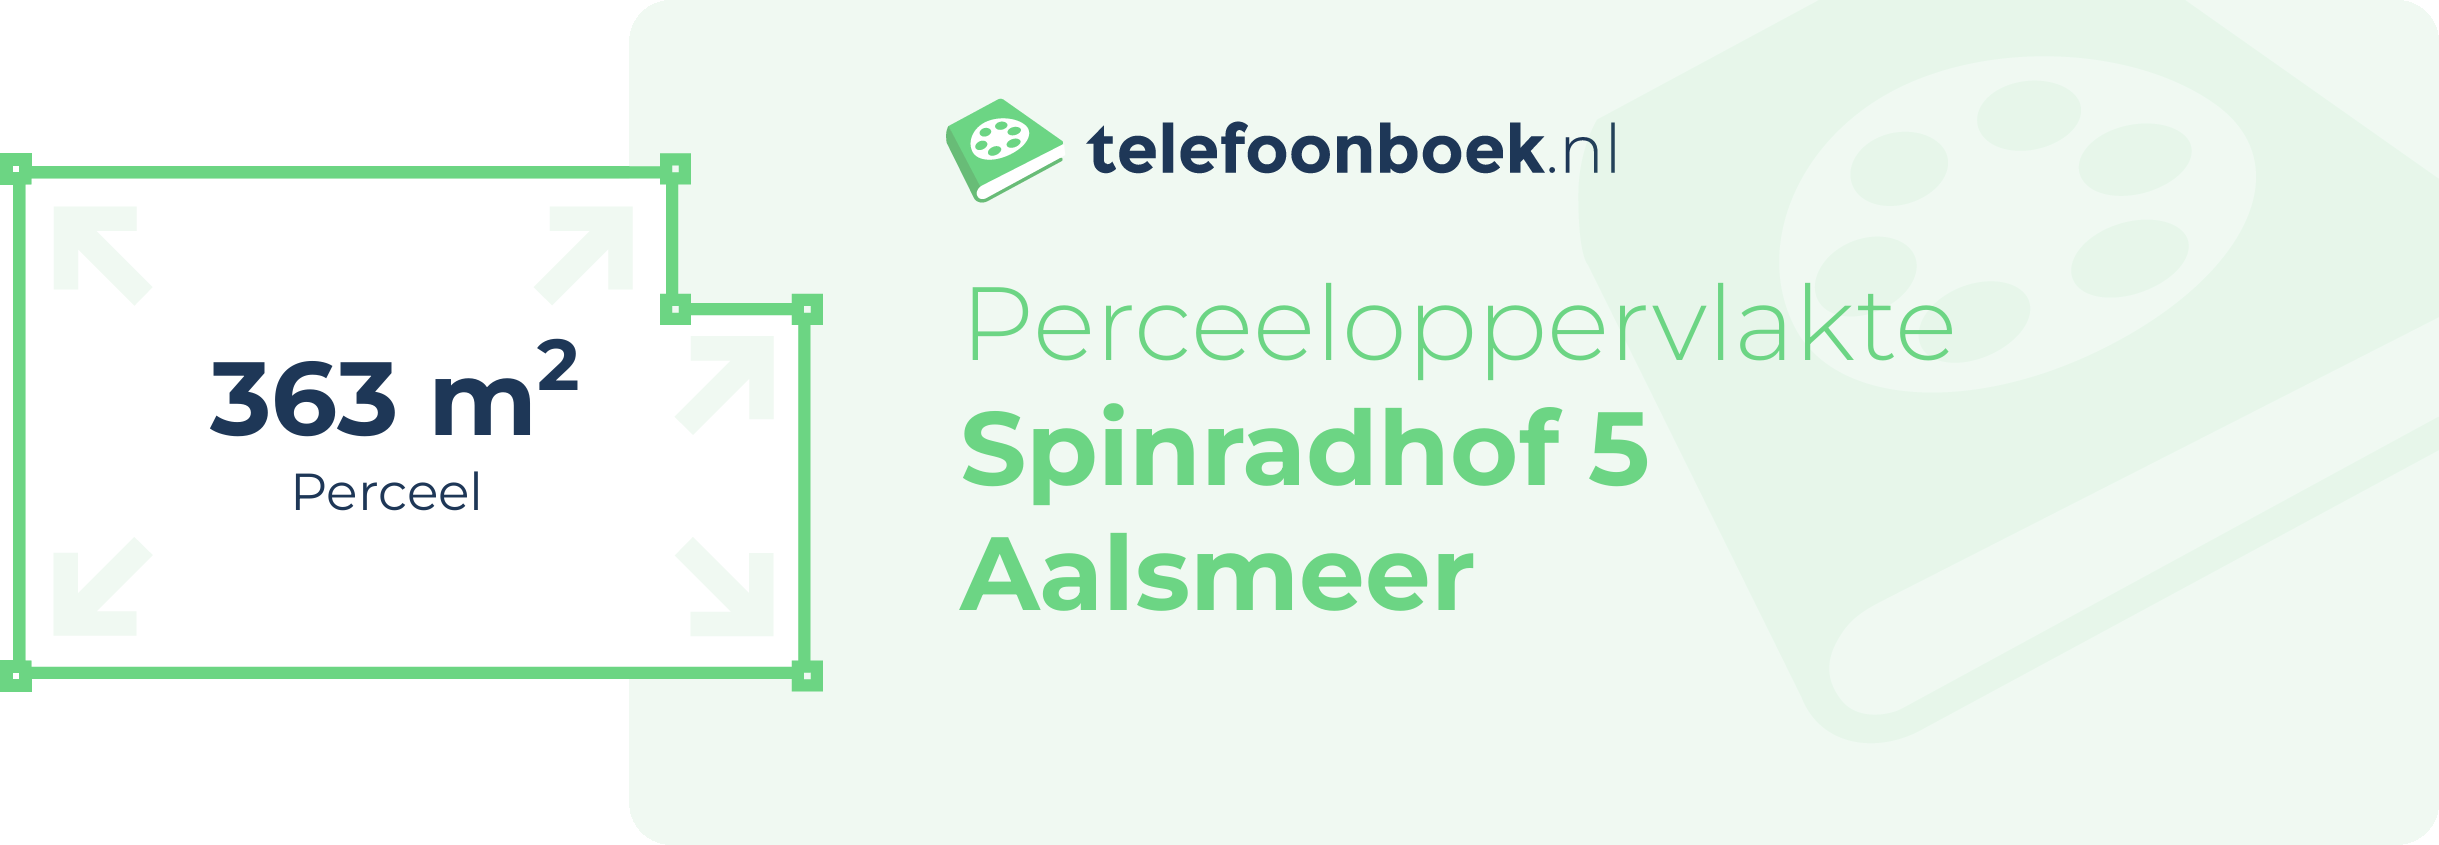 Perceeloppervlakte Spinradhof 5 Aalsmeer